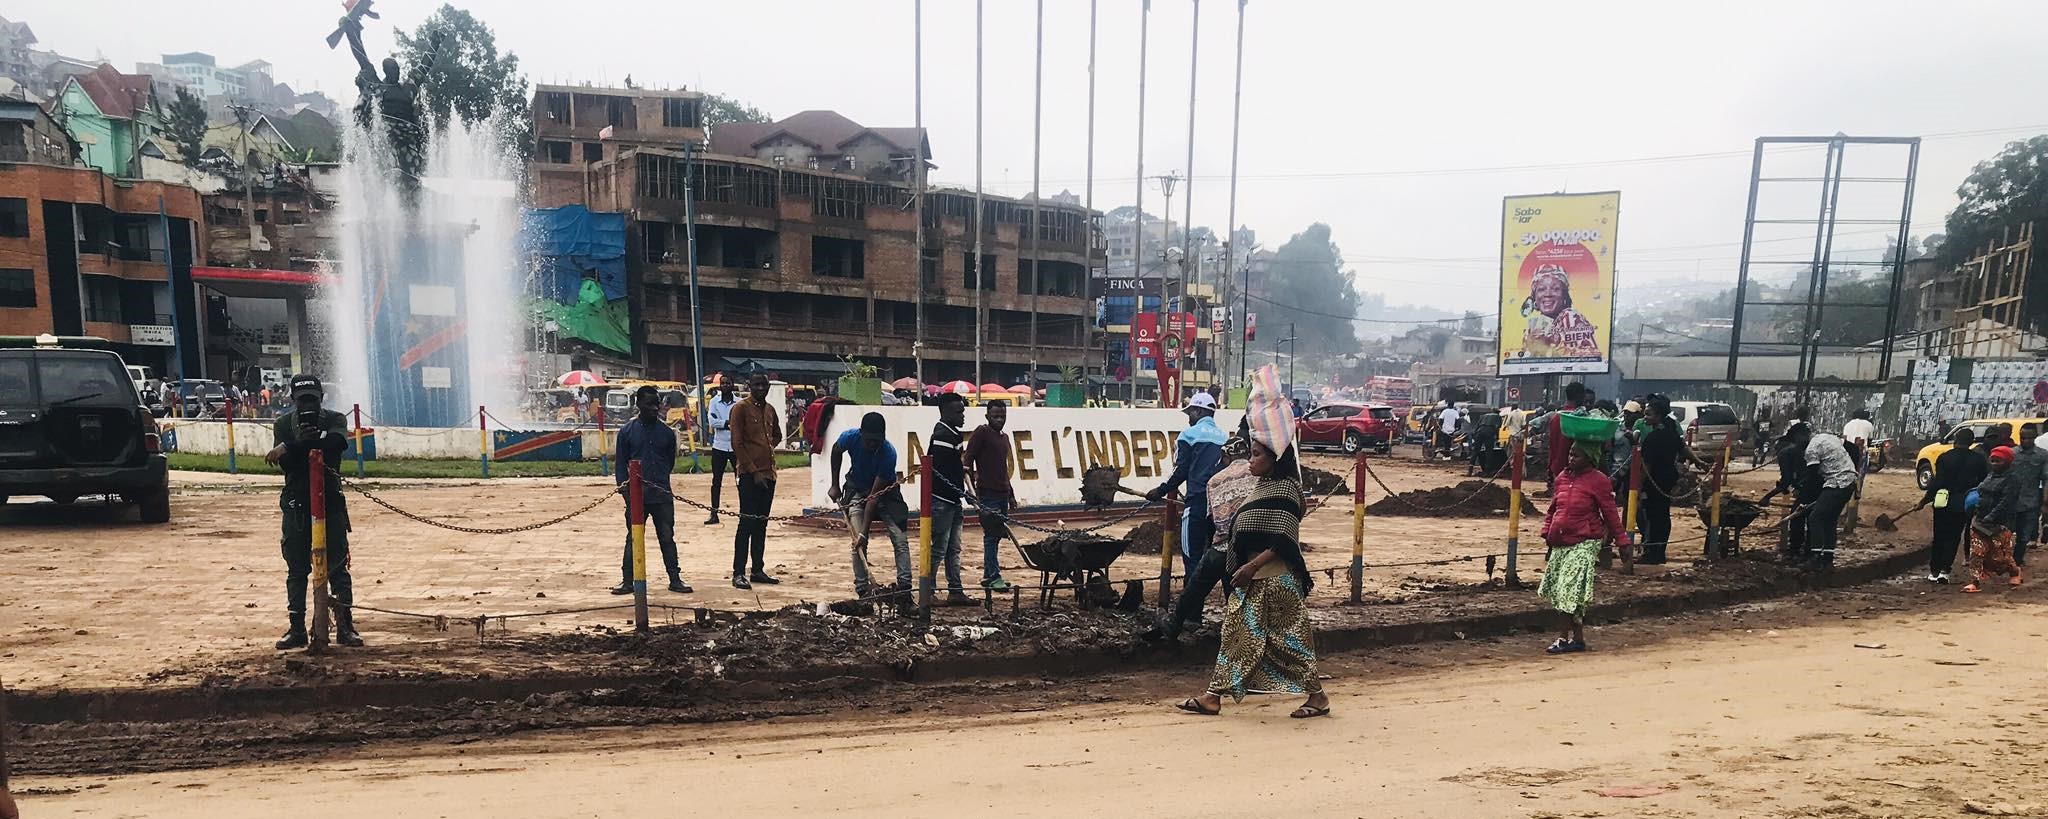 4-janvier-a-bukavu-des-etudiants-assainissent-la-place-de-lindependance-a-loccasion-de-la-journee-des-martyrs